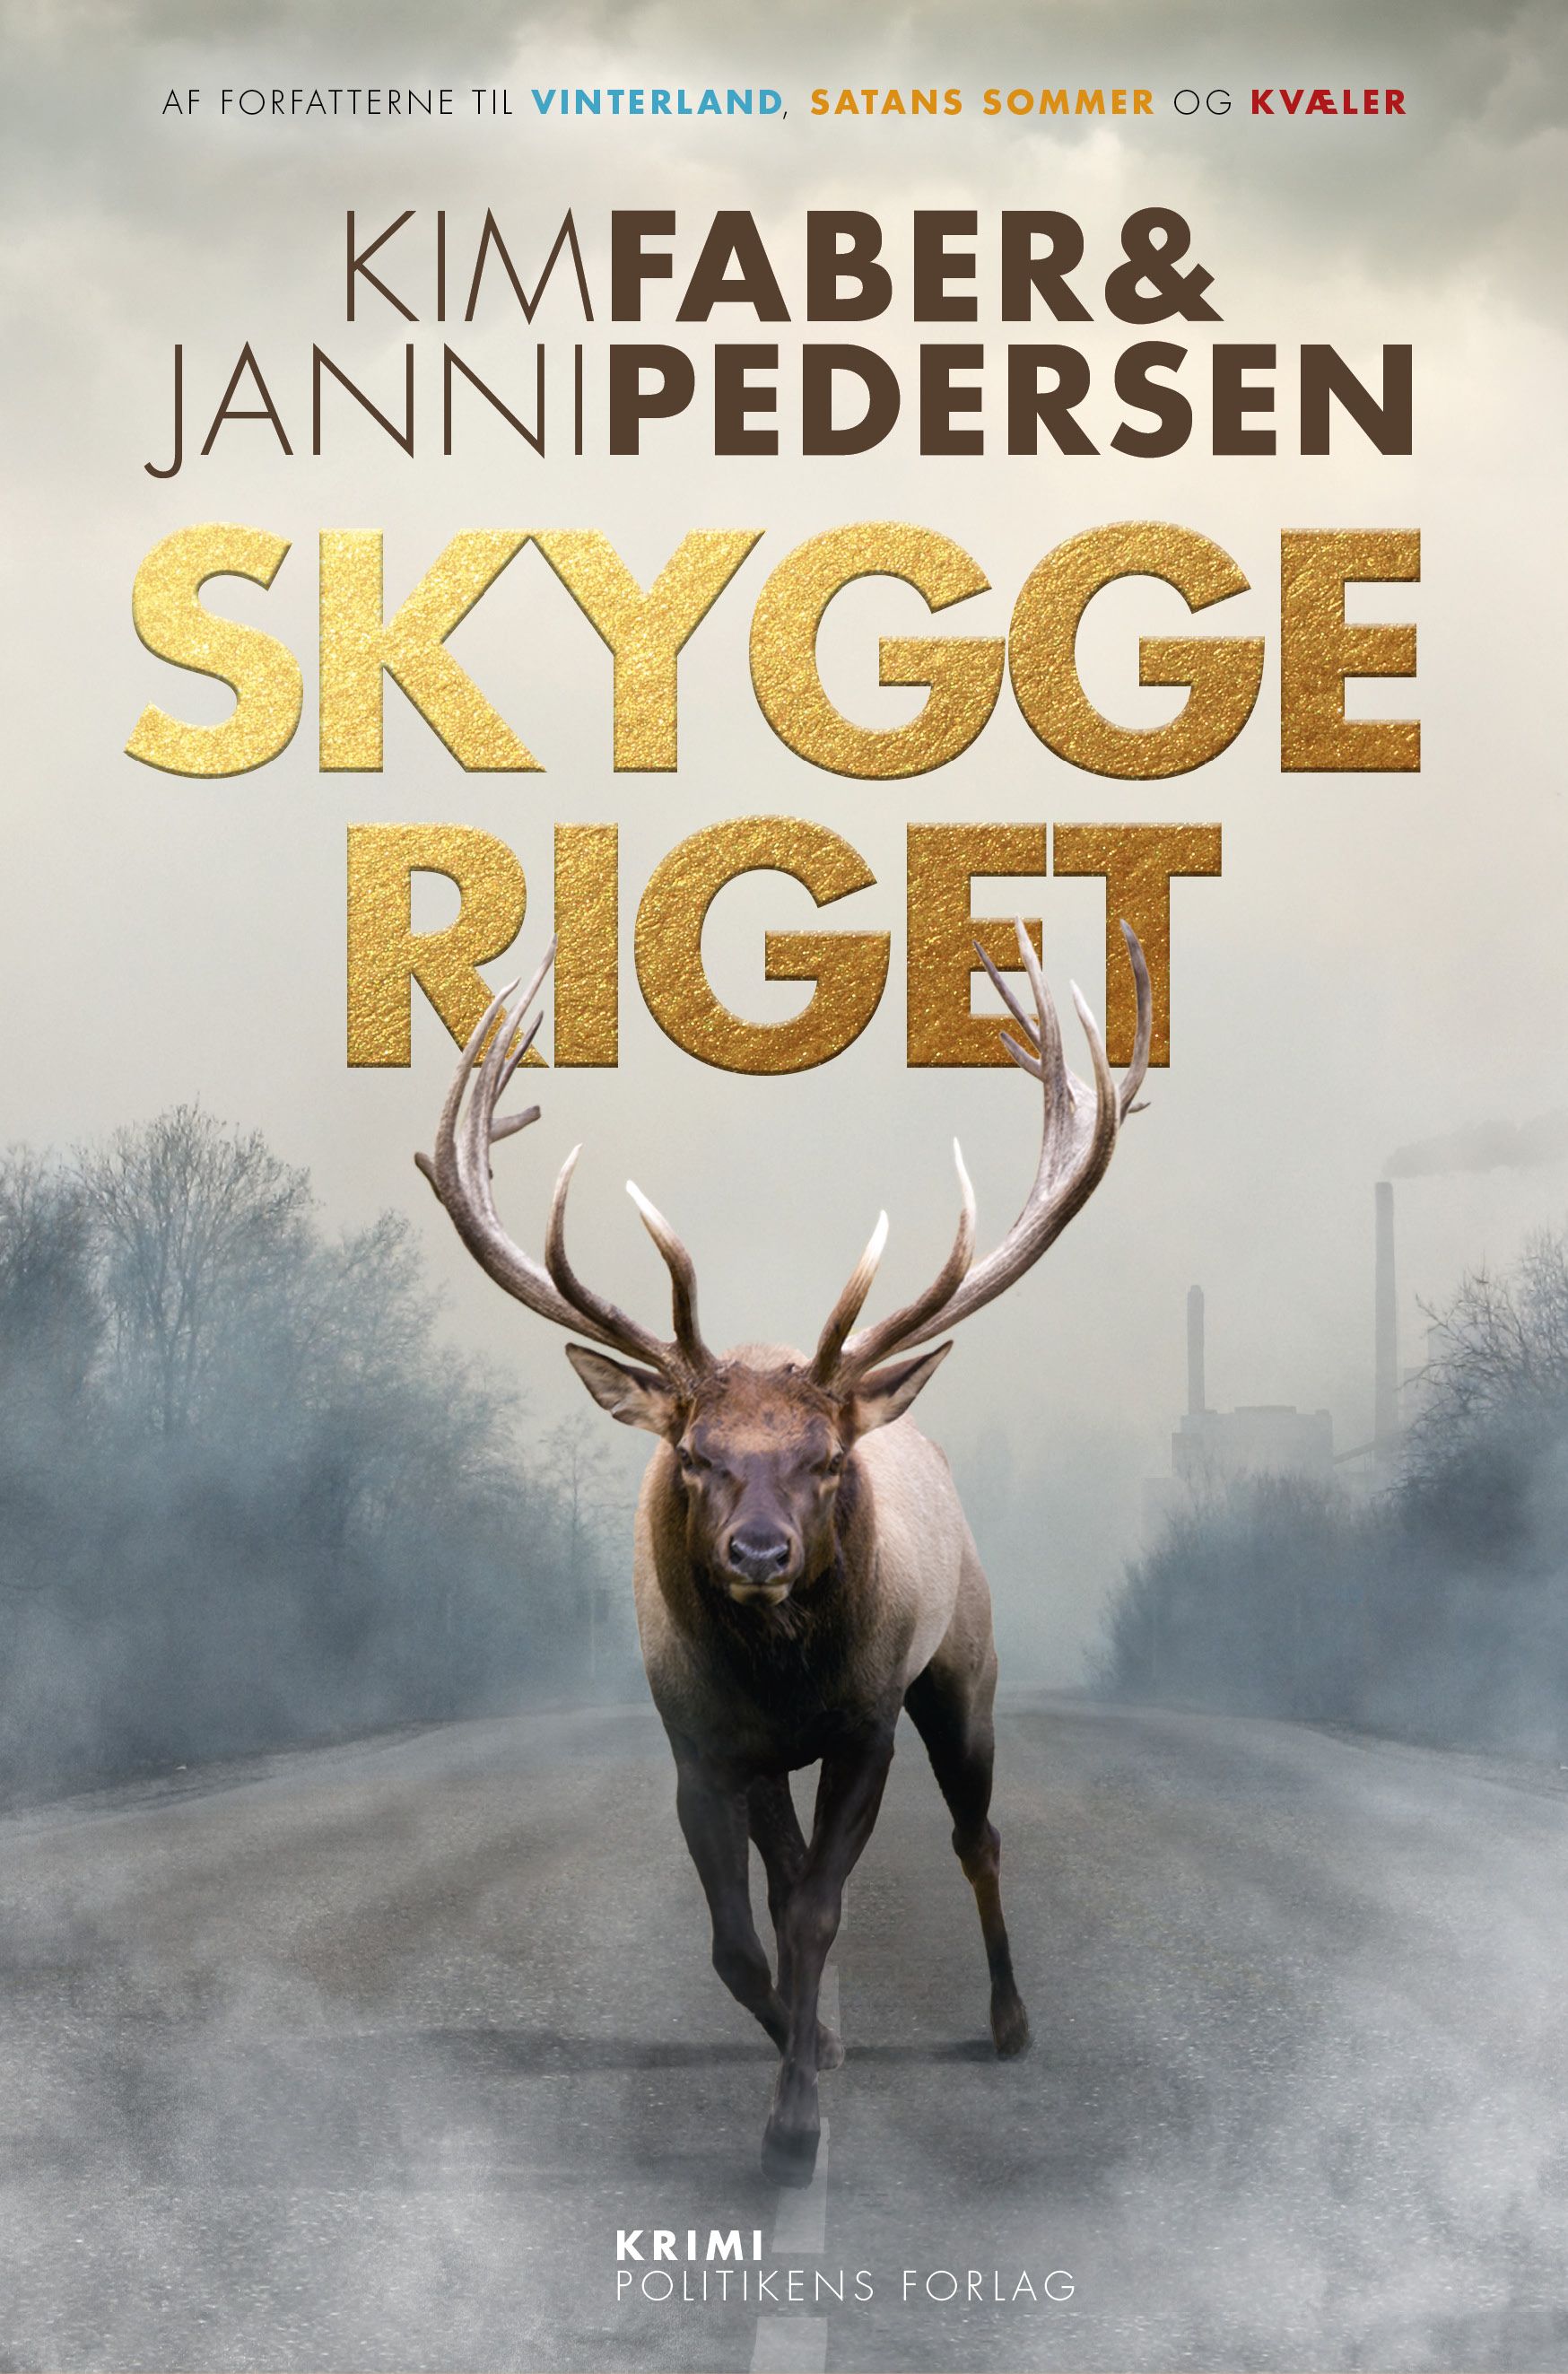 Skyggeriget, e-bok av Kim Faber, Janni Pedersen